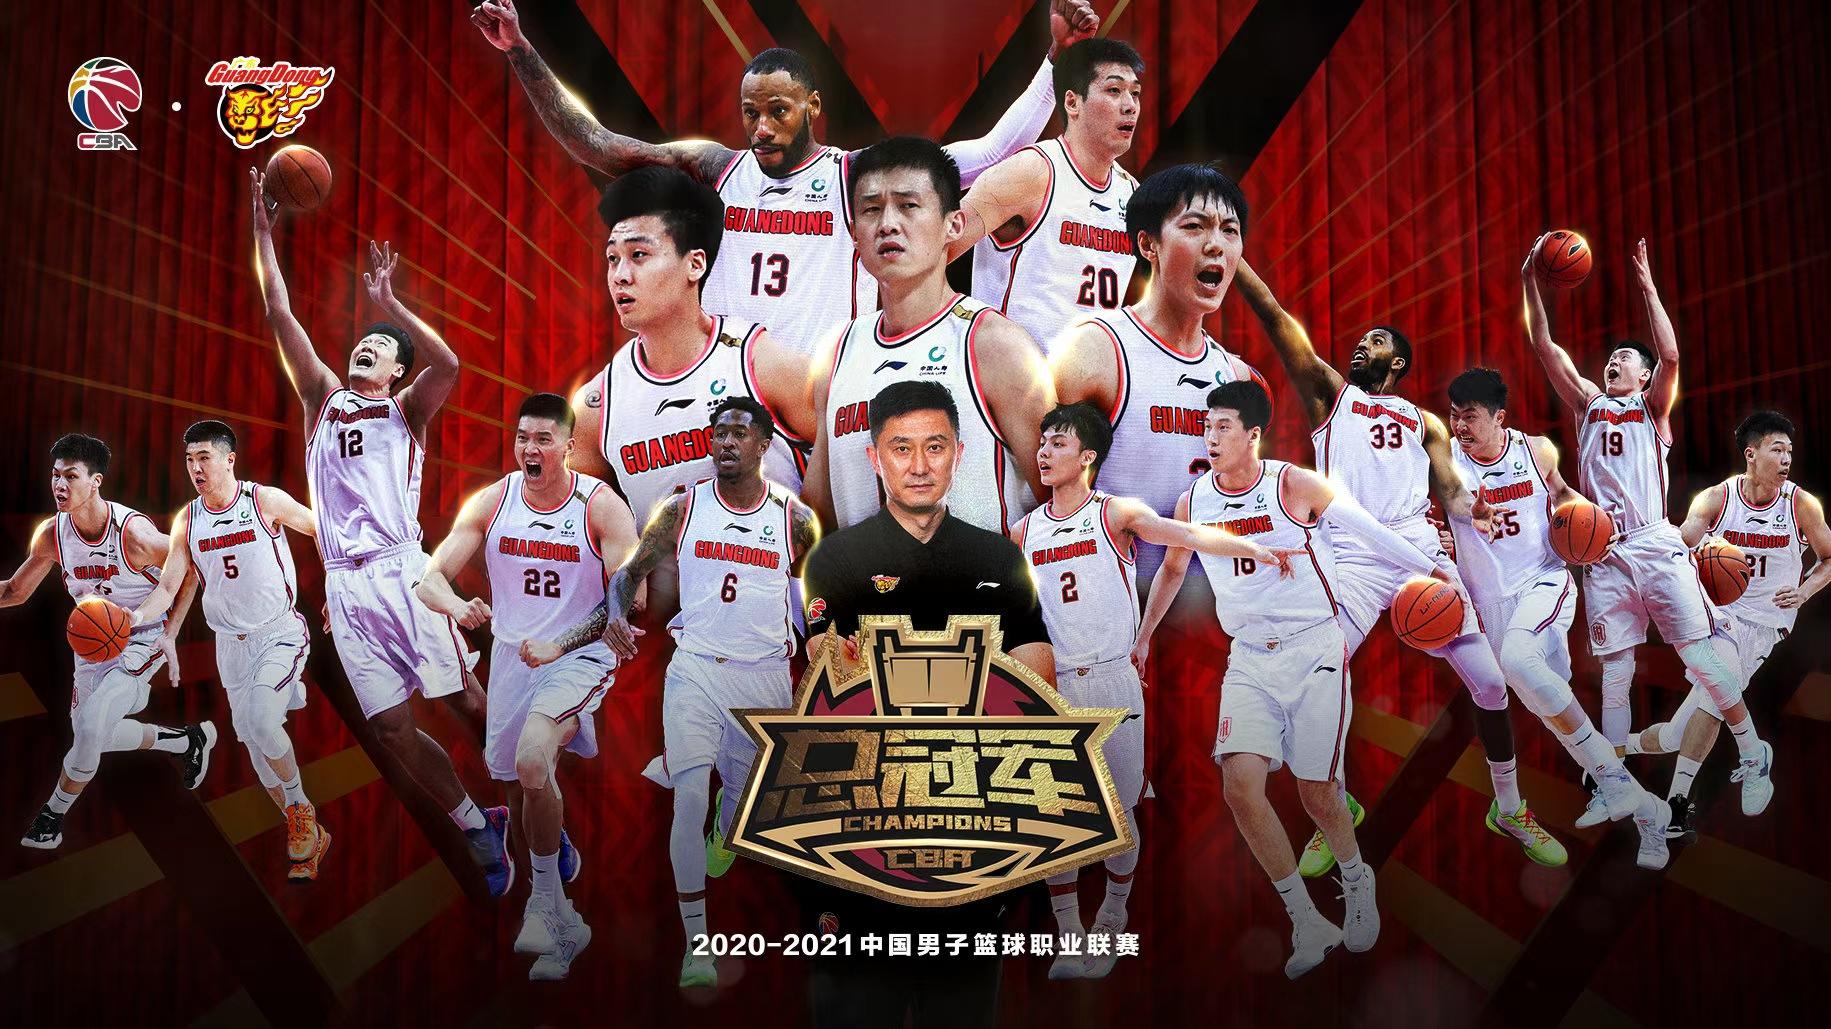 2020-2021年的总冠军终于有了归属,广东队在总决赛三场的较量中,以2